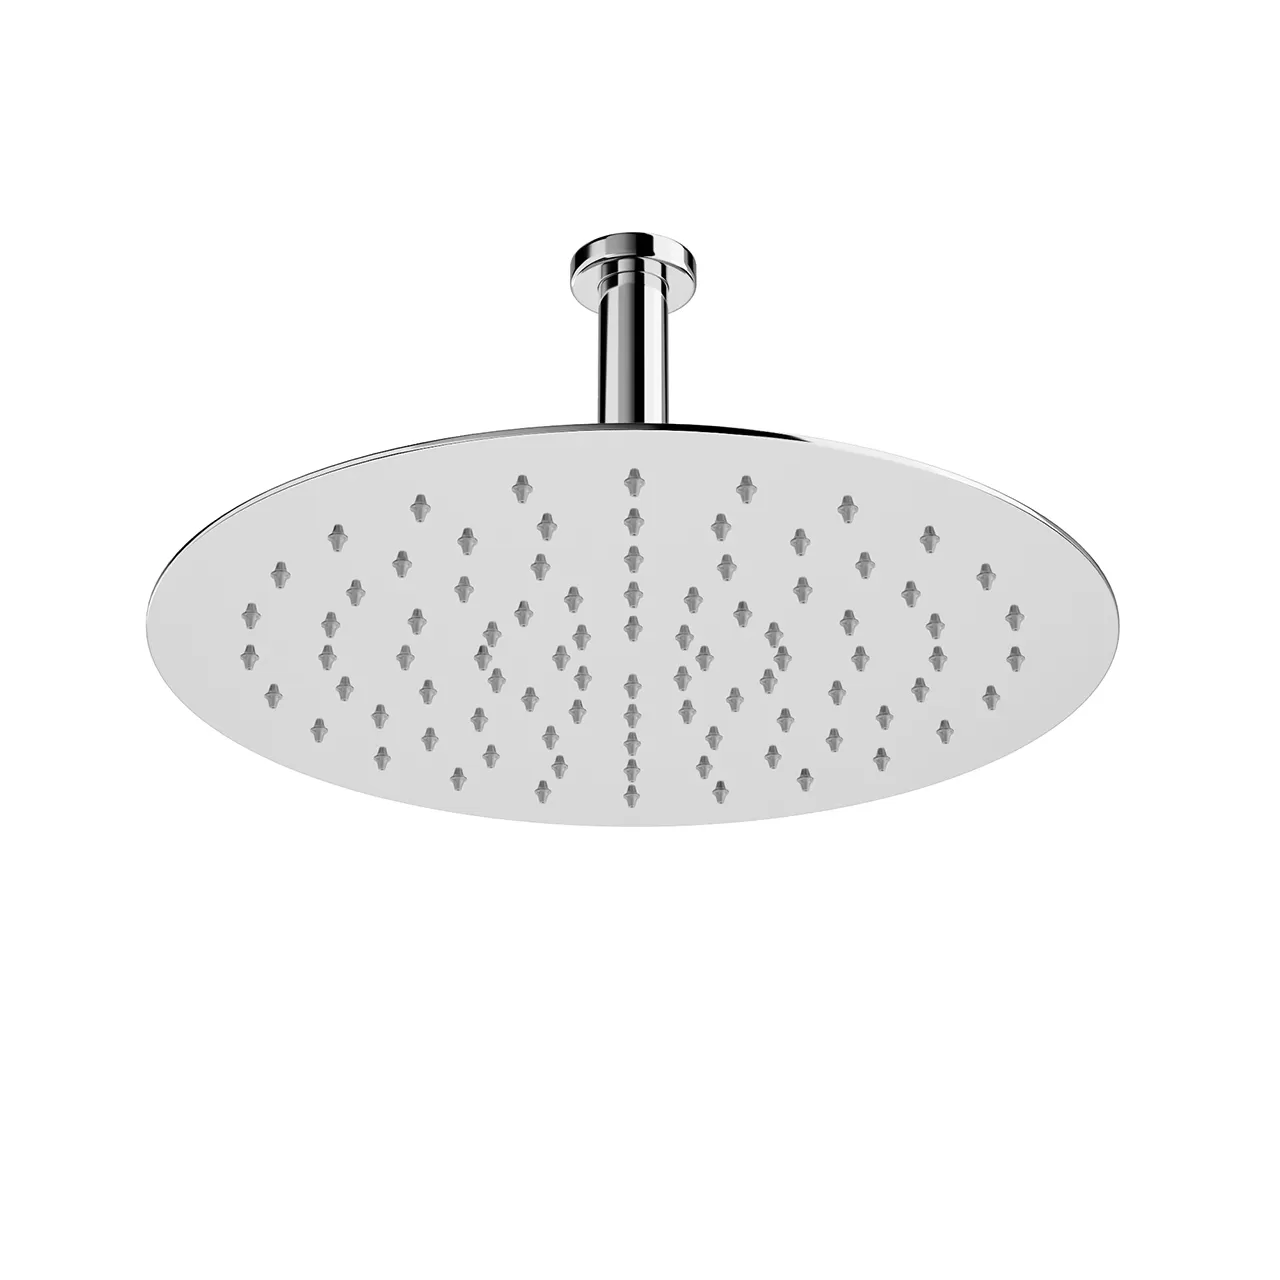 Bathroom – ceiling-flat-round-rain-shower-head-300-mm-by-laufen